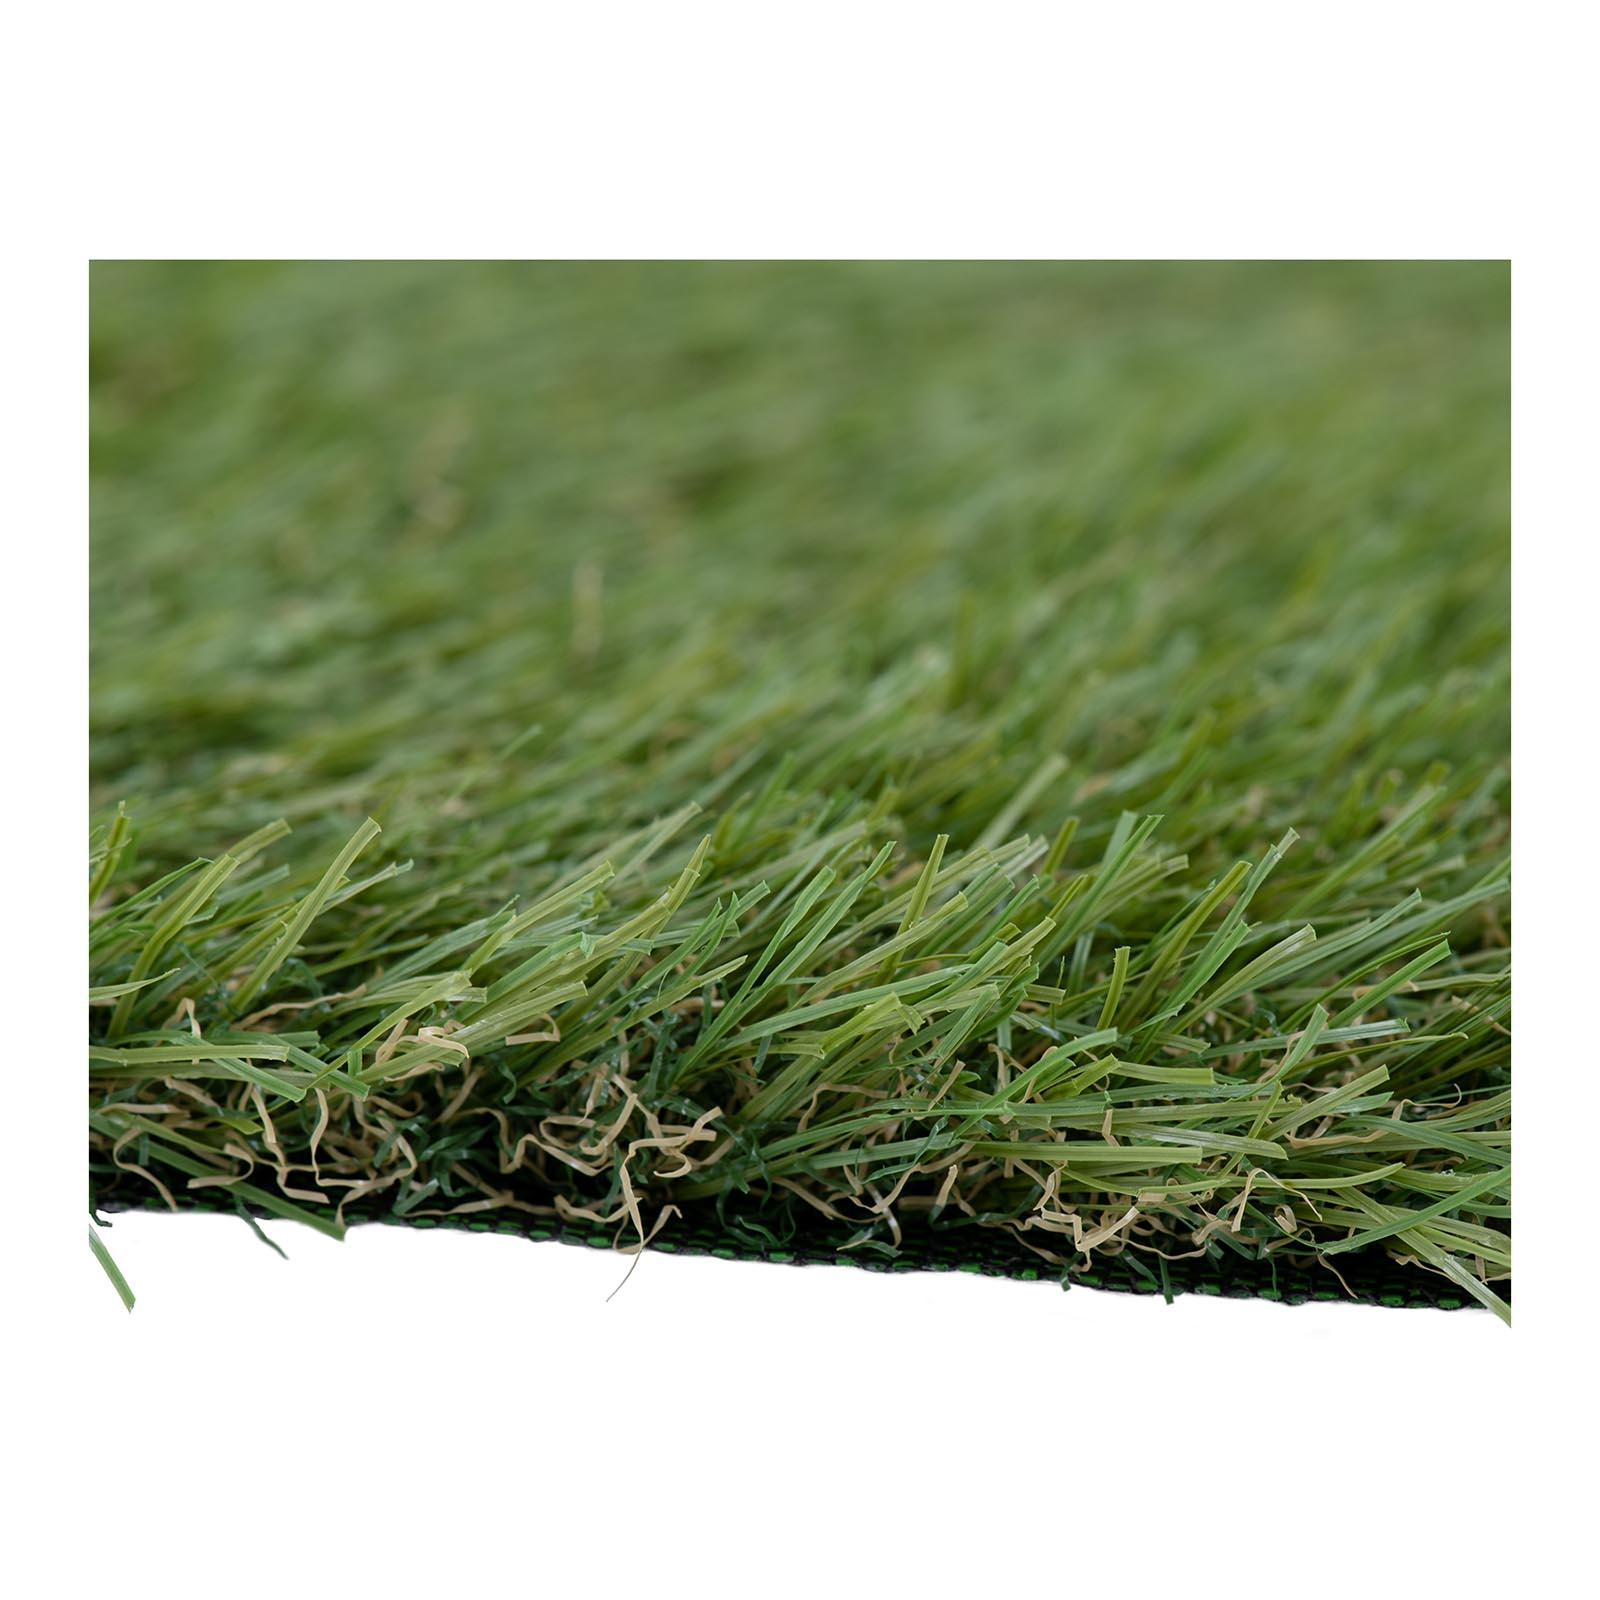 Sztuczna trawa - zestaw 5 sztuk - 100 x 100 cm - wysokość: 30 mm - szybkość ściegu: 14/10 cm - odporność na promieniowanie UV